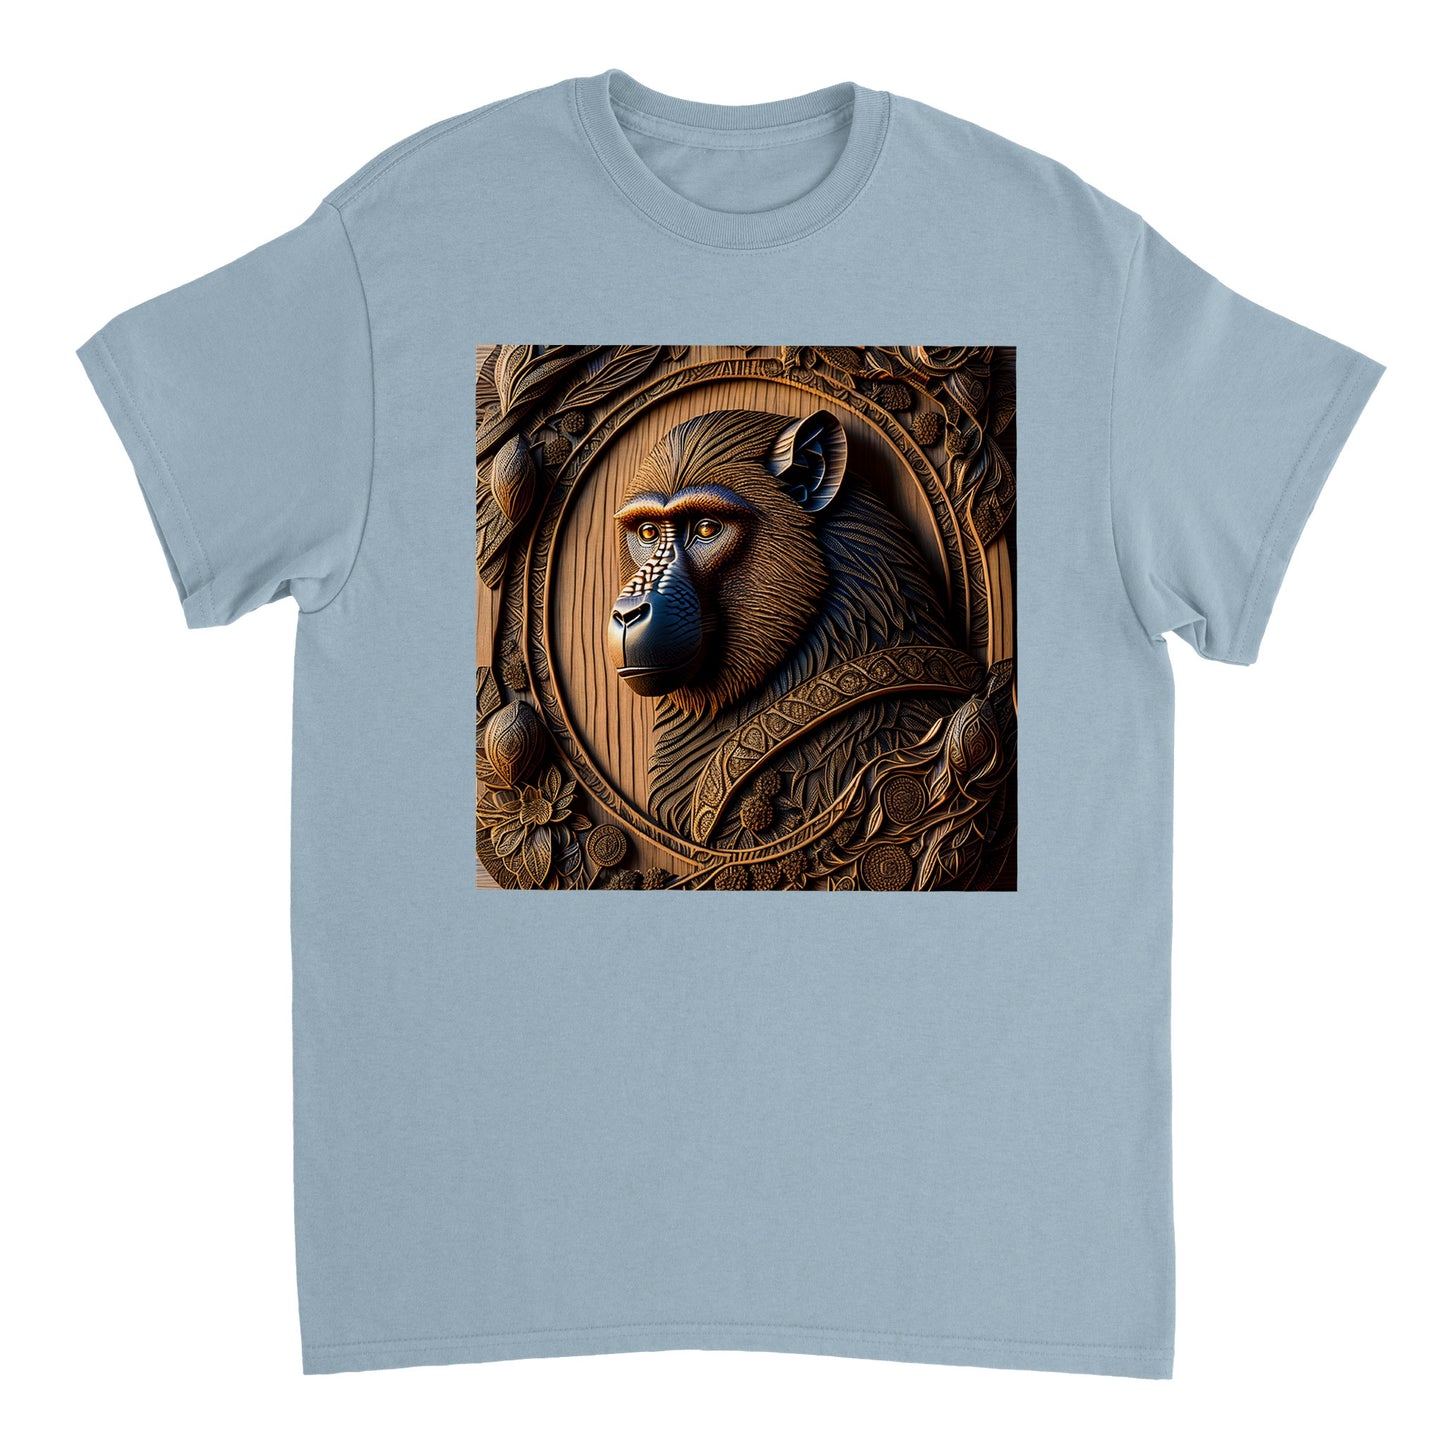 3D Wooden Animal Art - Heavyweight Unisex Crewneck T-shirt 60